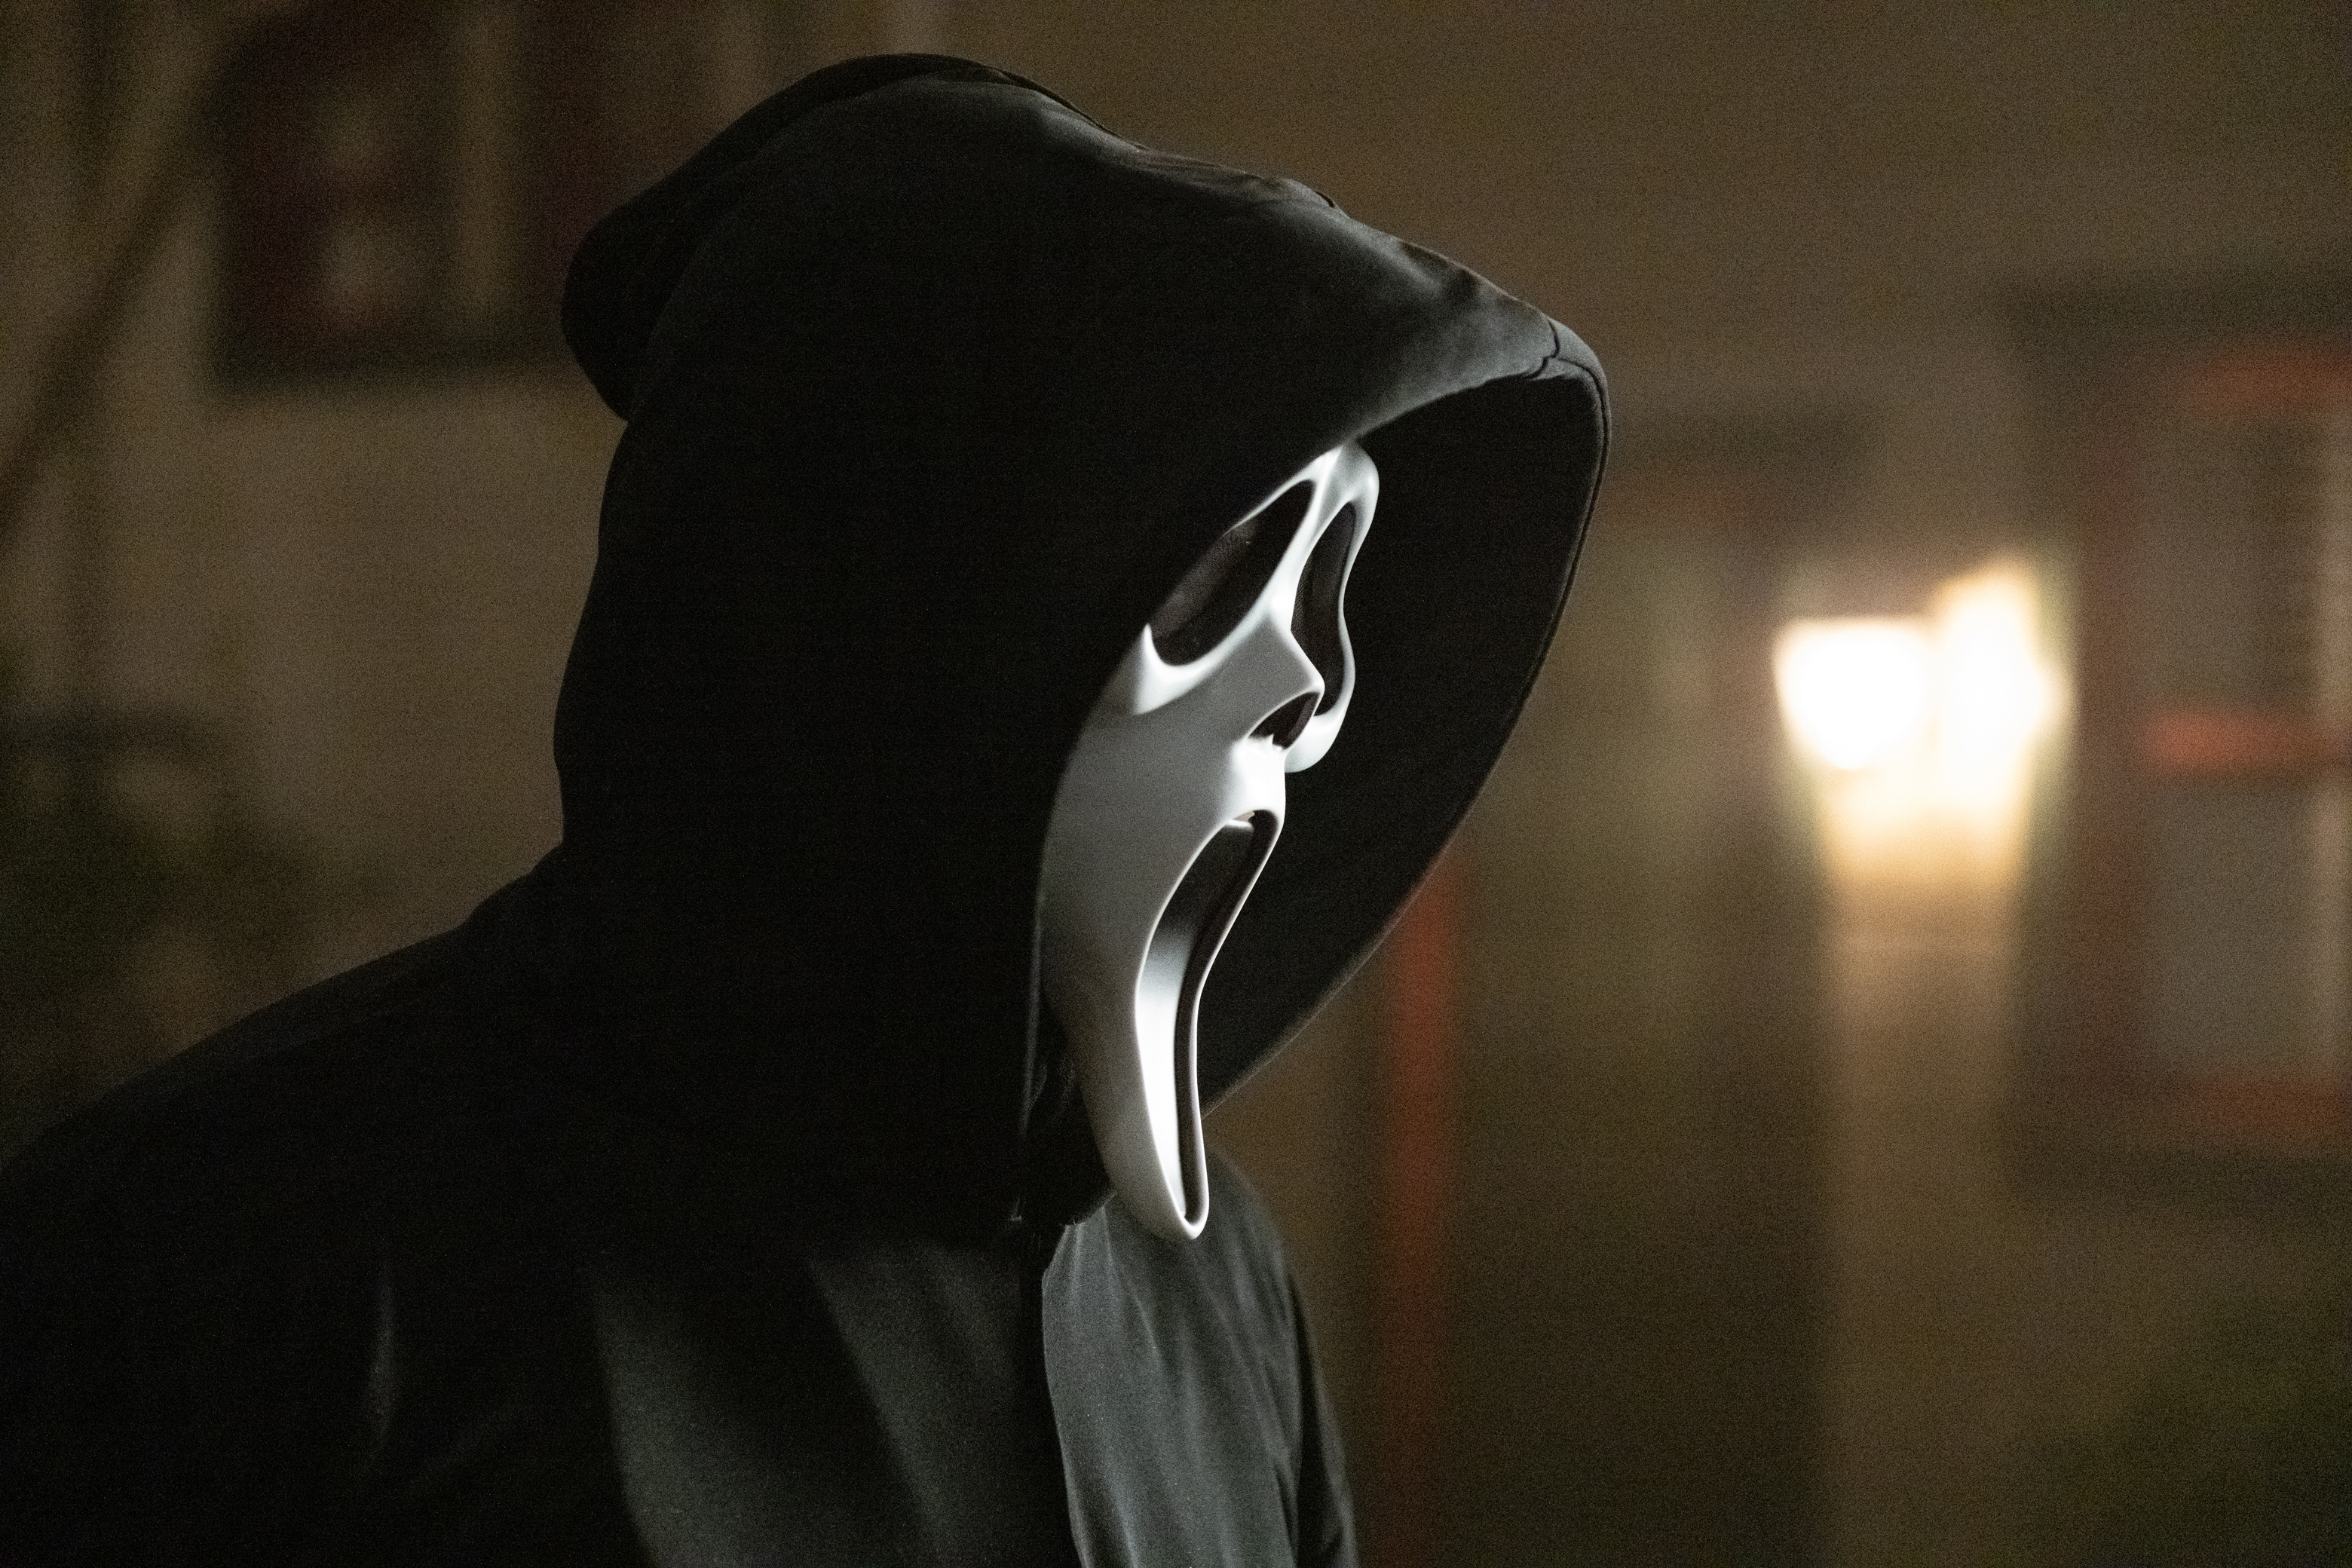 Ghostface from Scream 2022